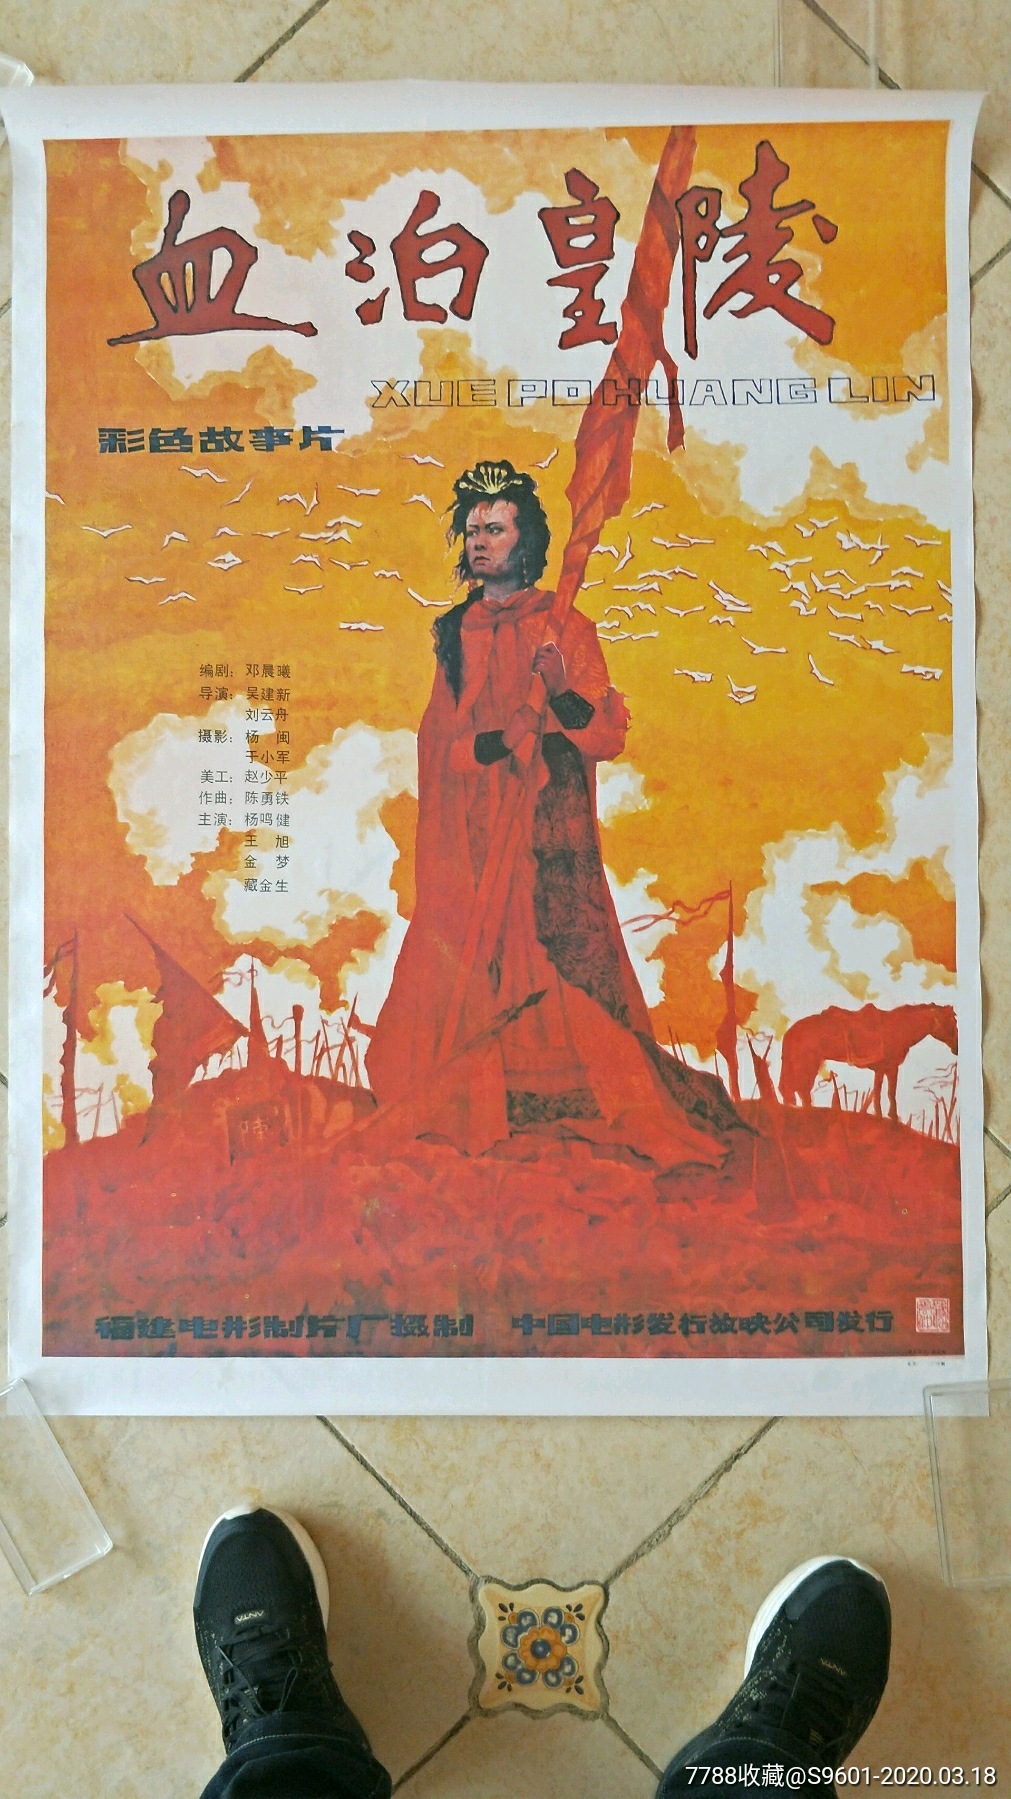 血泊皇陵-价格:30.0000元-se71737748-电影海报-零售